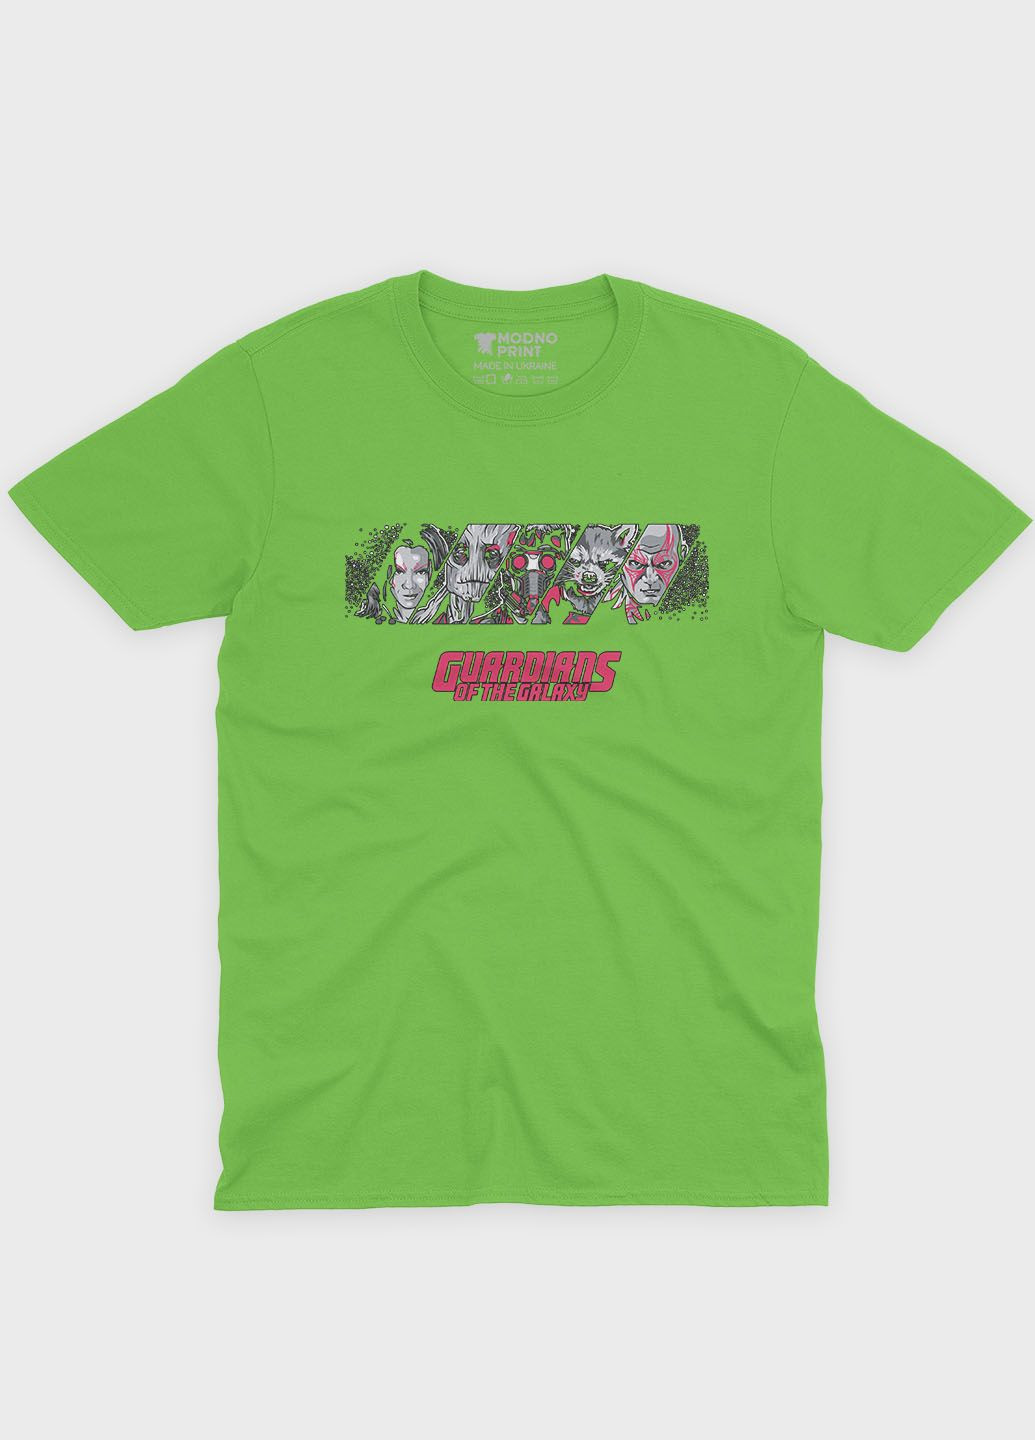 Салатовая демисезонная футболка для девочки с принтом супергероев - часовые галактики (ts001-1-kiw-006-017-013-g) Modno